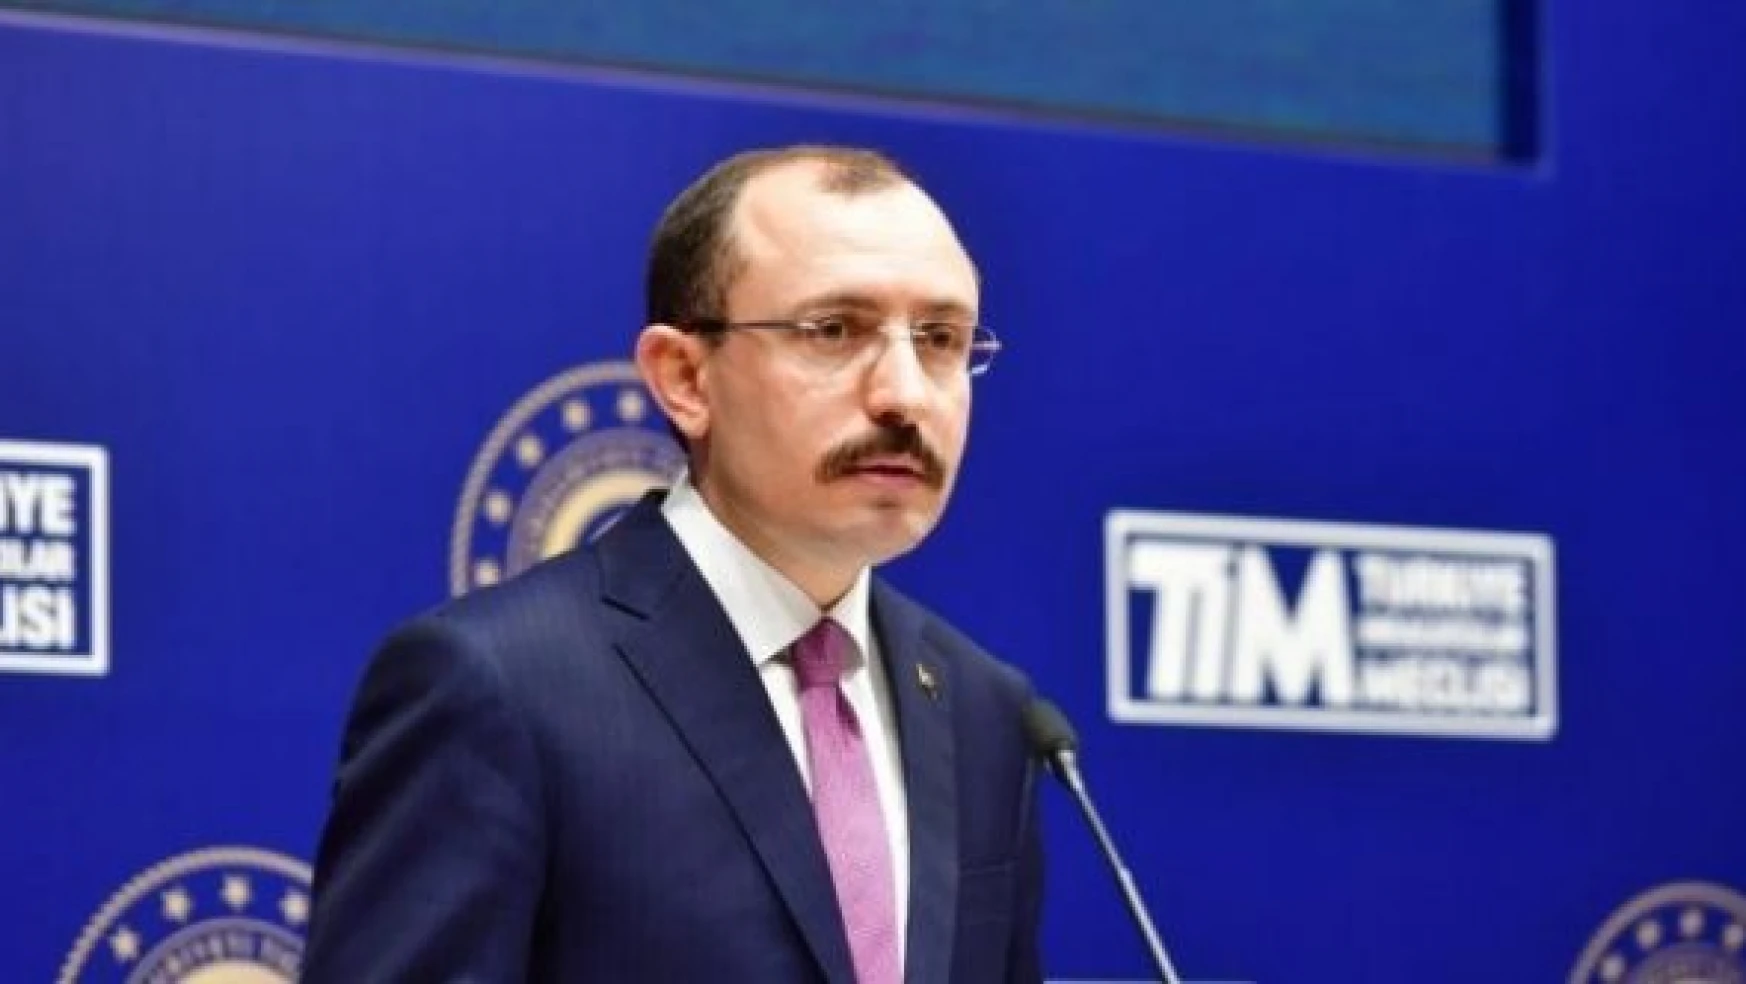 Ticaret Bakanı Muş dış ticaret açığının gerilediği açıklamasında bulundu